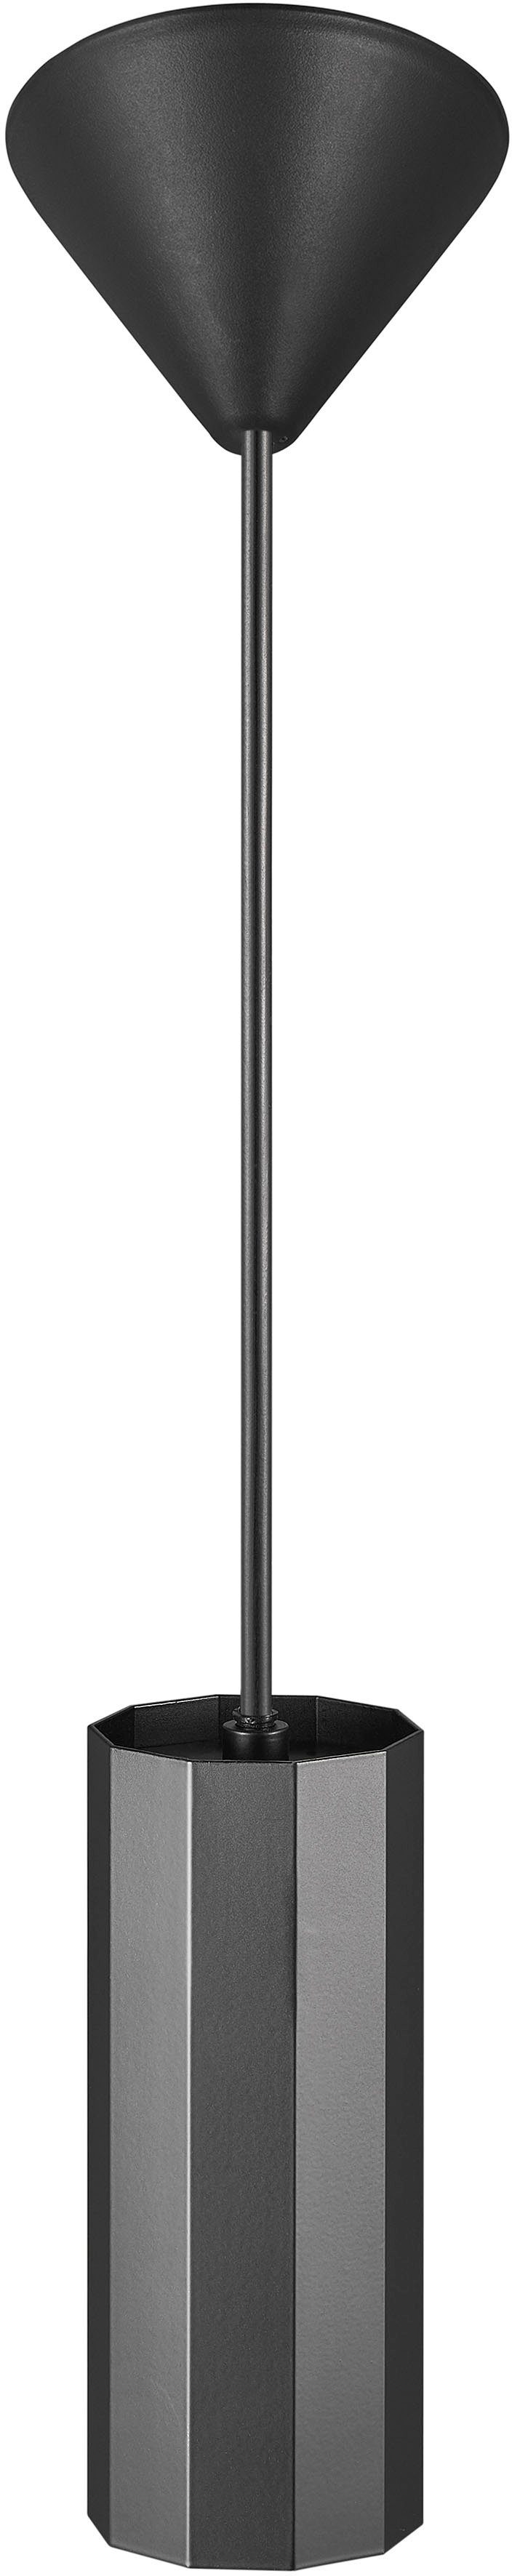 Nordlux Pendelleuchte Alanis, ohne Leuchtmittel, Profil, matter Minimalistisches Design, 10-seitiges Messing-Look